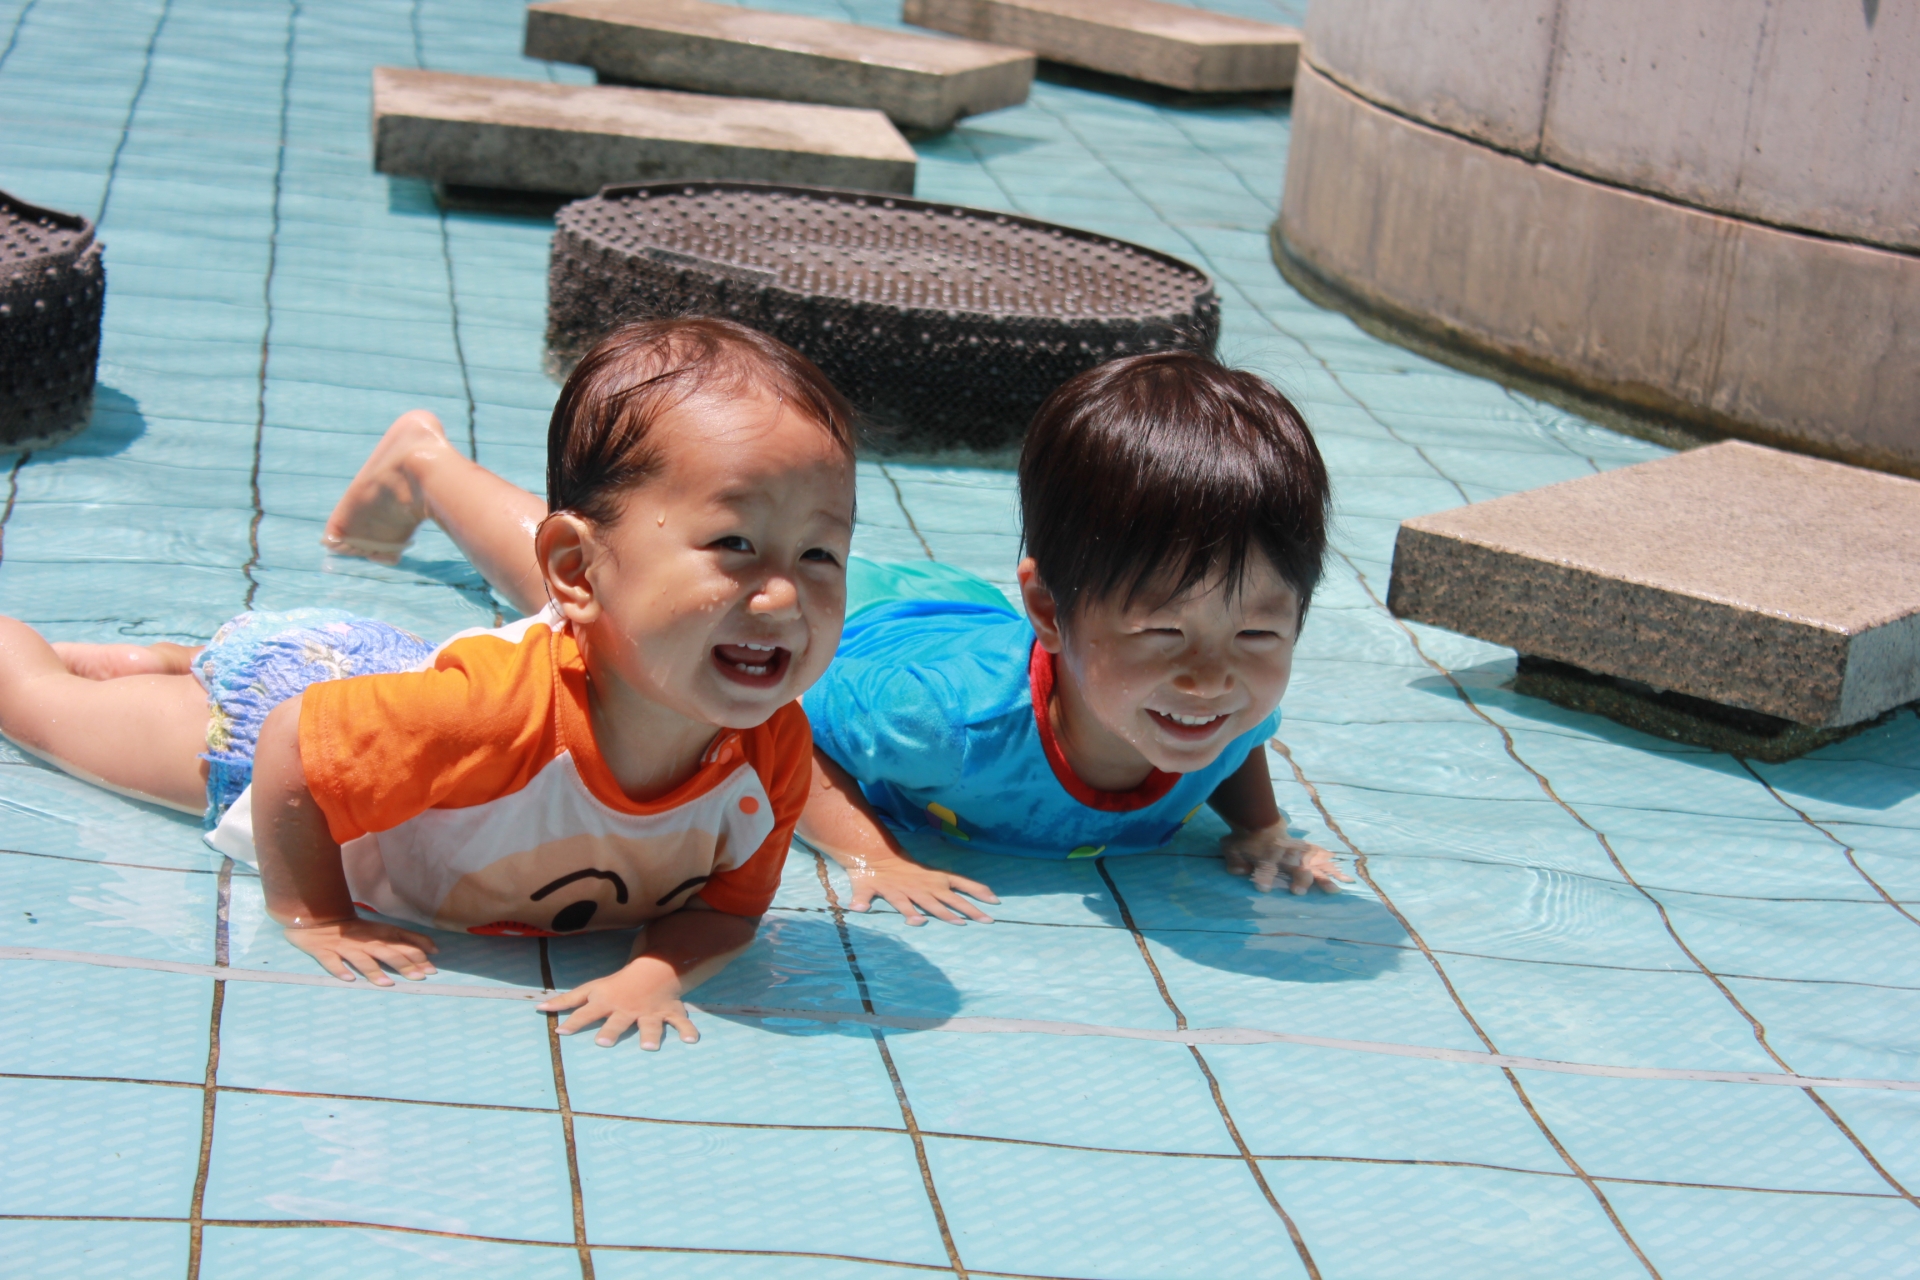 足立区で水遊びができるおすすめの公園情報6スポット プール 無料施設 東京イベントプラス 親子で楽しいお得な週末お出かけ情報